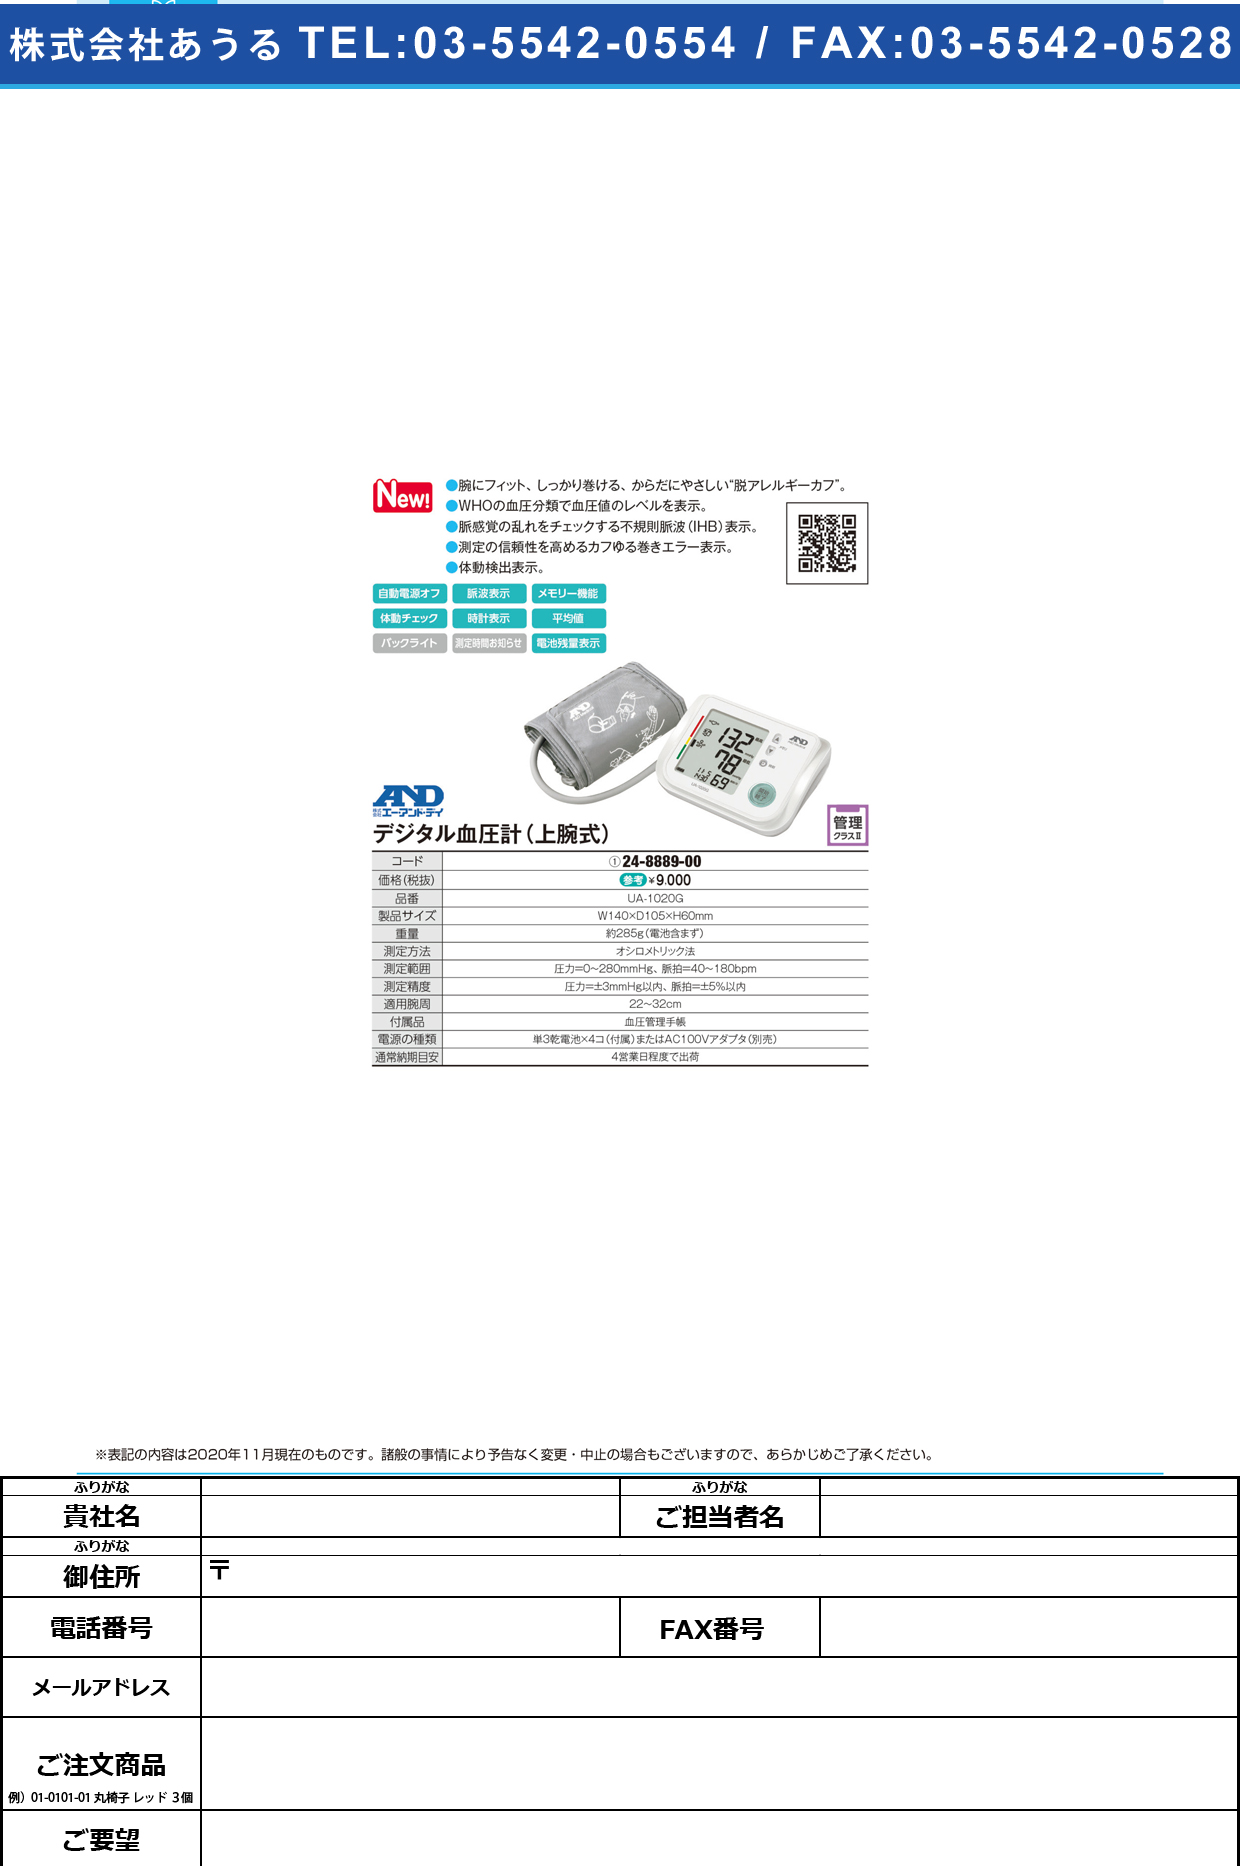 デジタル血圧計(上腕式) UA-1020GUA-1020G(24-8889-00)【エー・アンド・デイ】(販売単位:1)